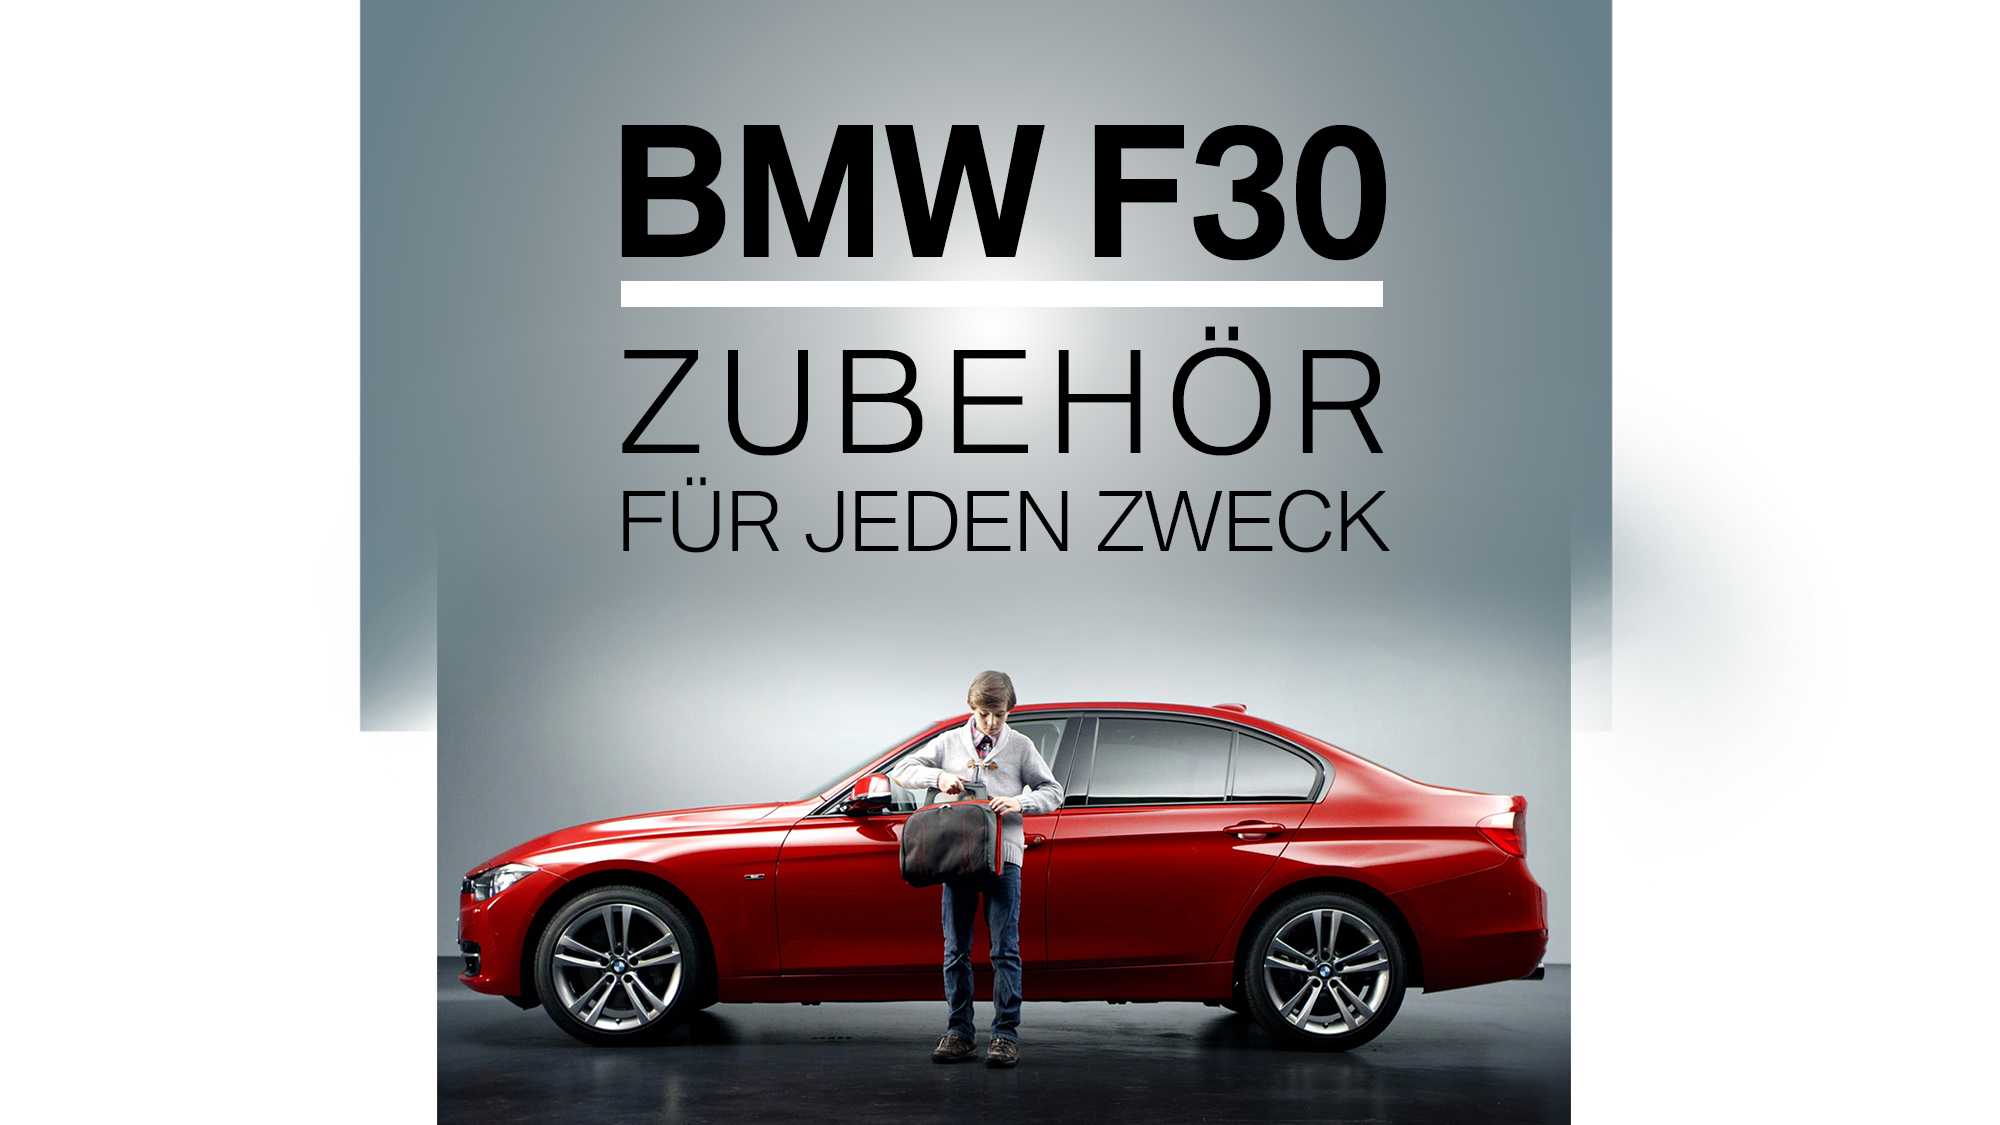 BMW F30 Zubehör - PANDA PICTURES Filmproduktion in München & Ulm